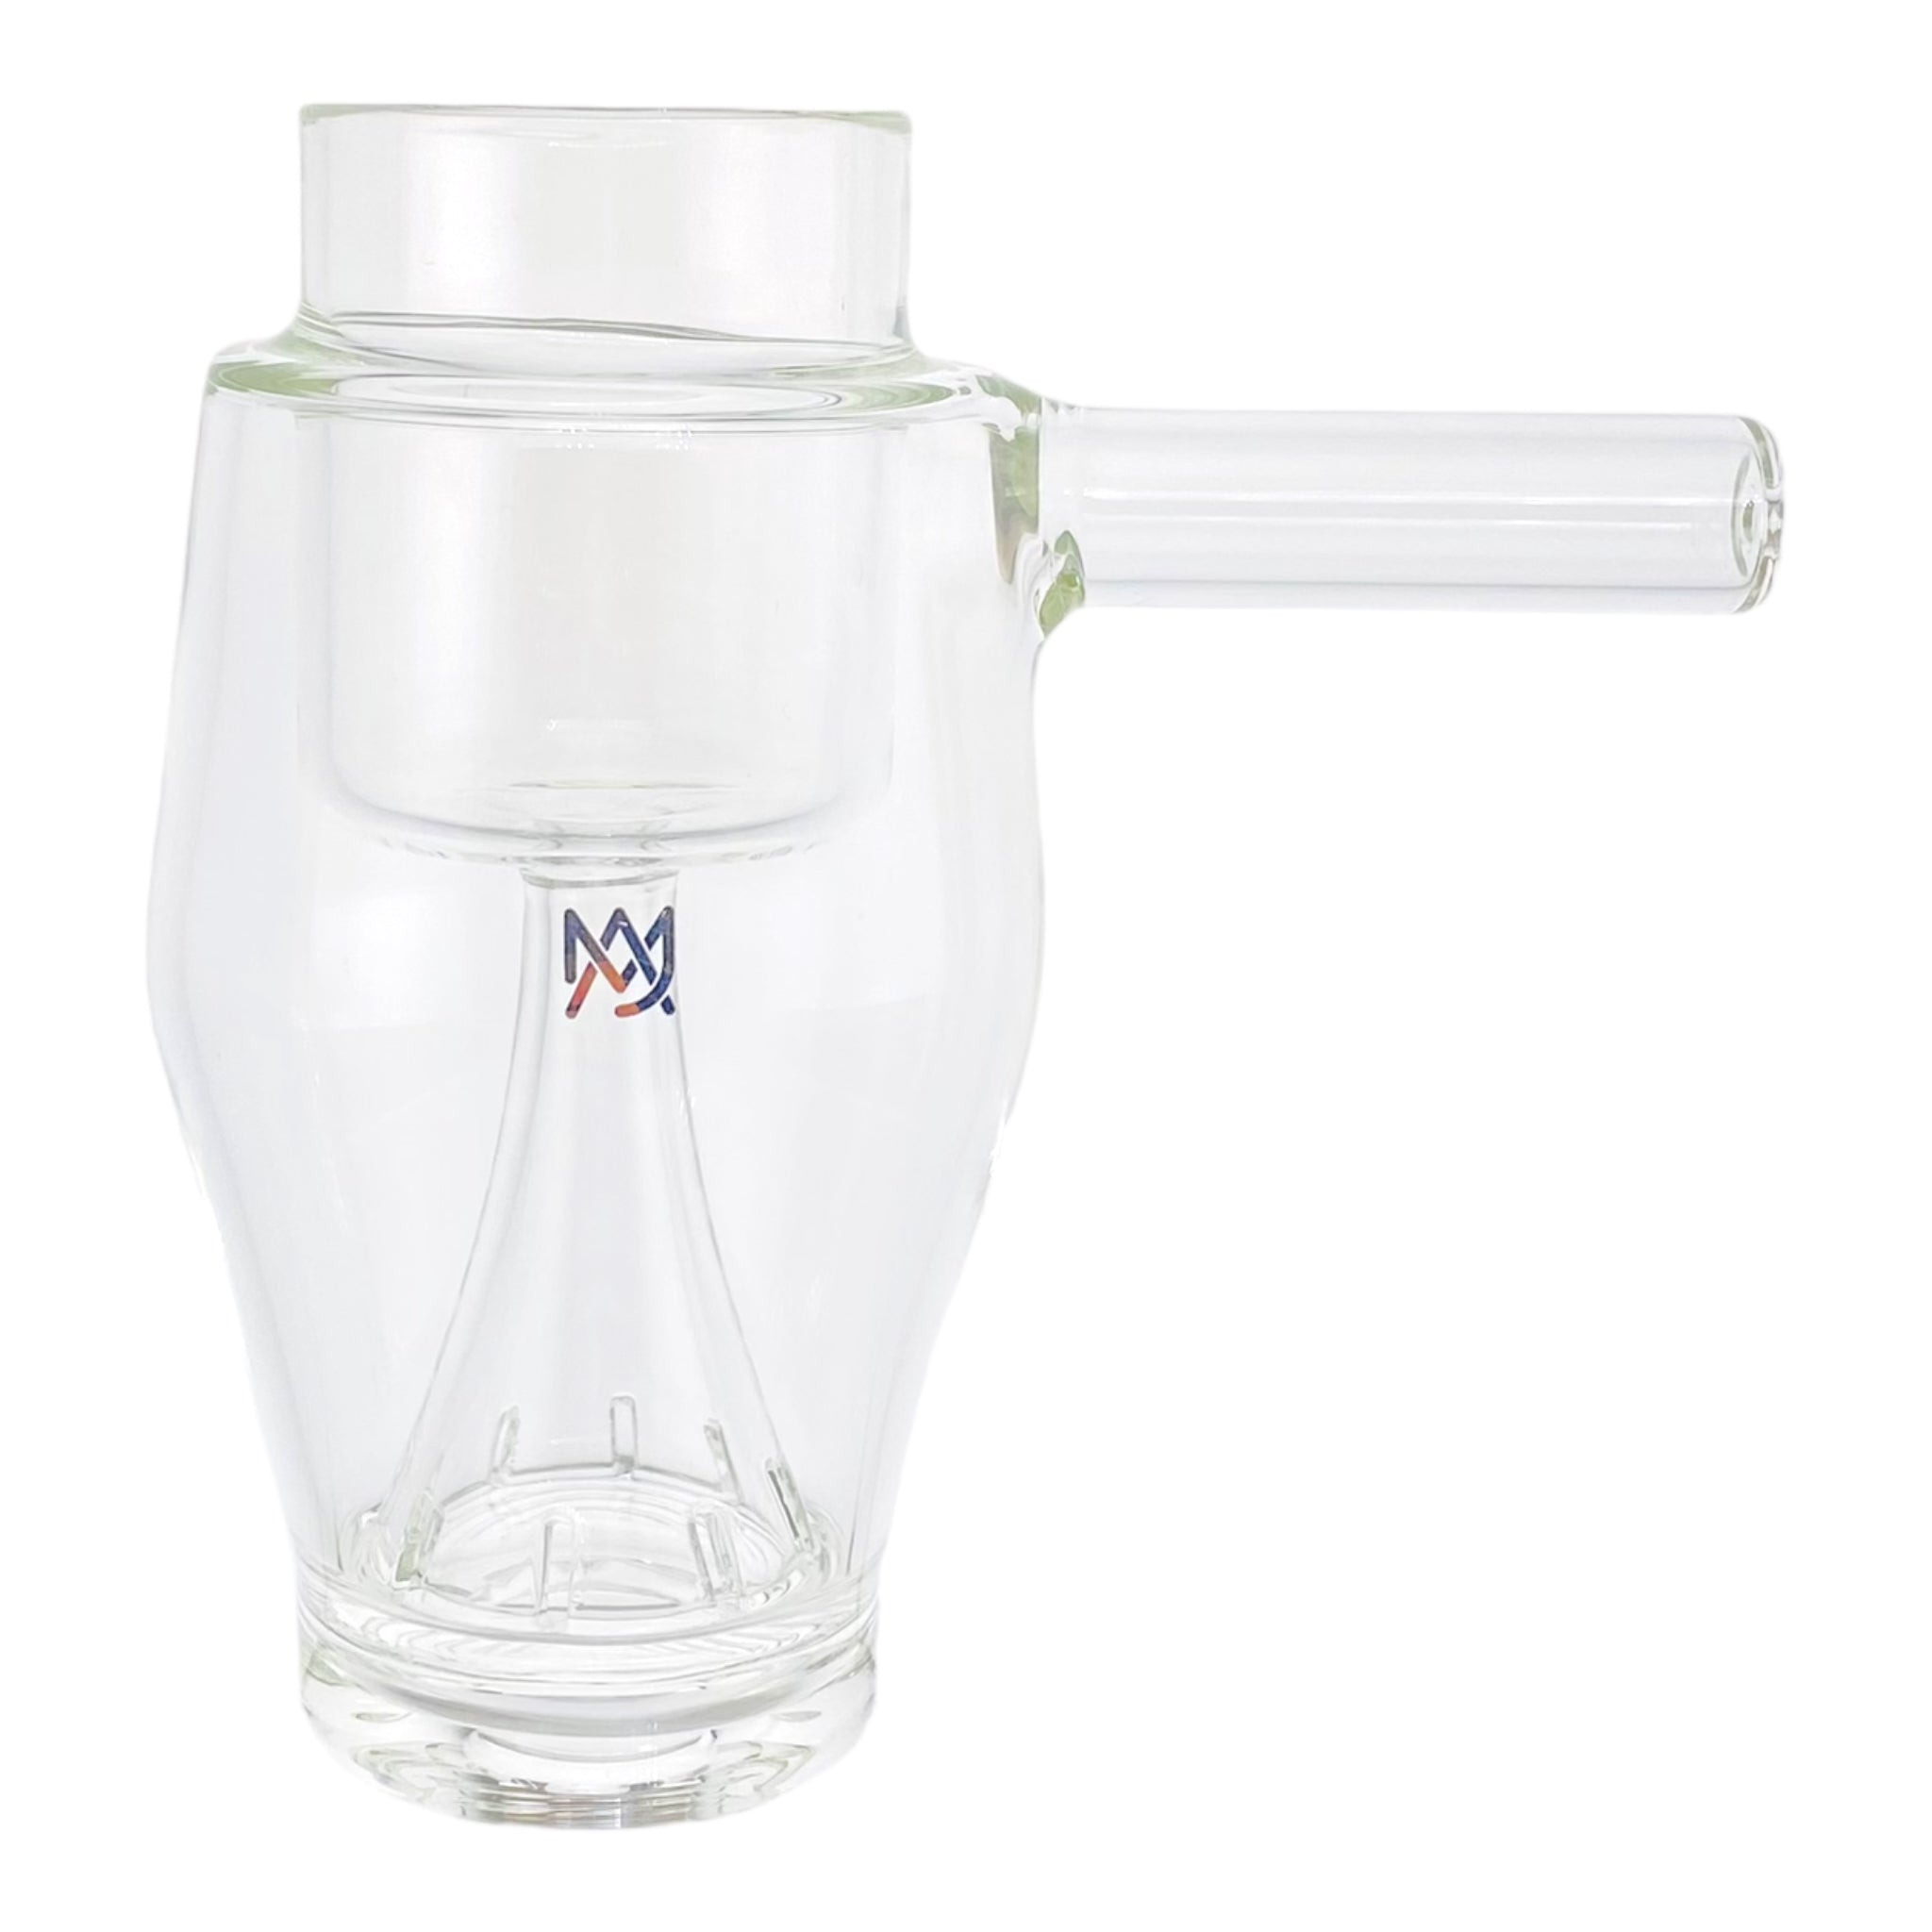 MJ Arsenal Proxy Glass Bubbler - Small